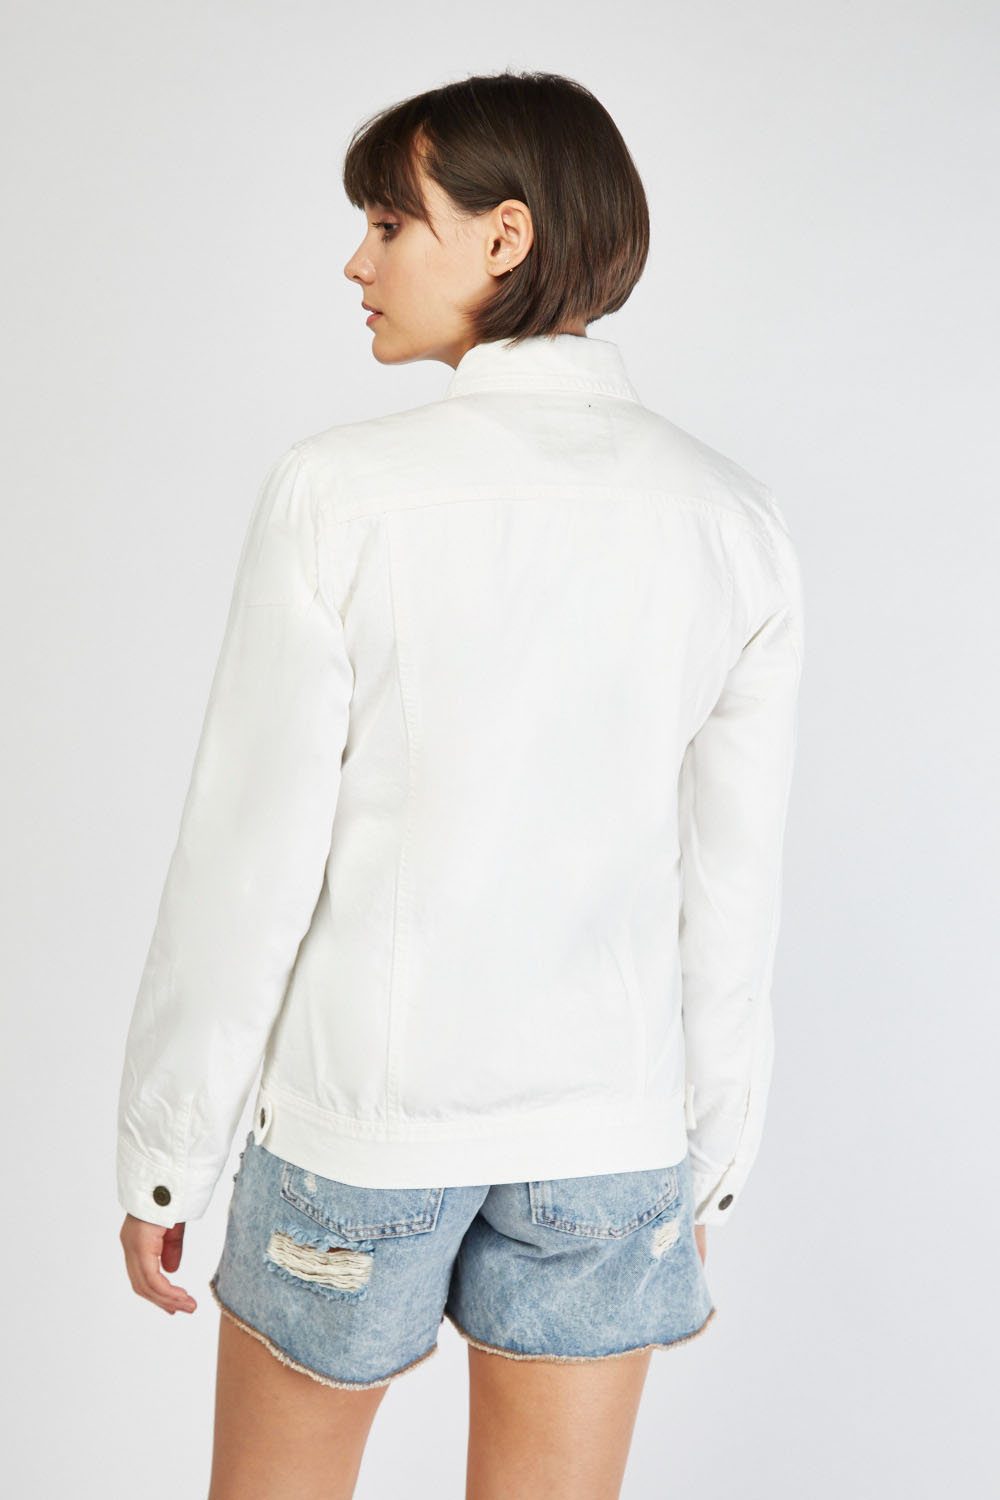 Long Sleeve White Denim Jacket - Just $7